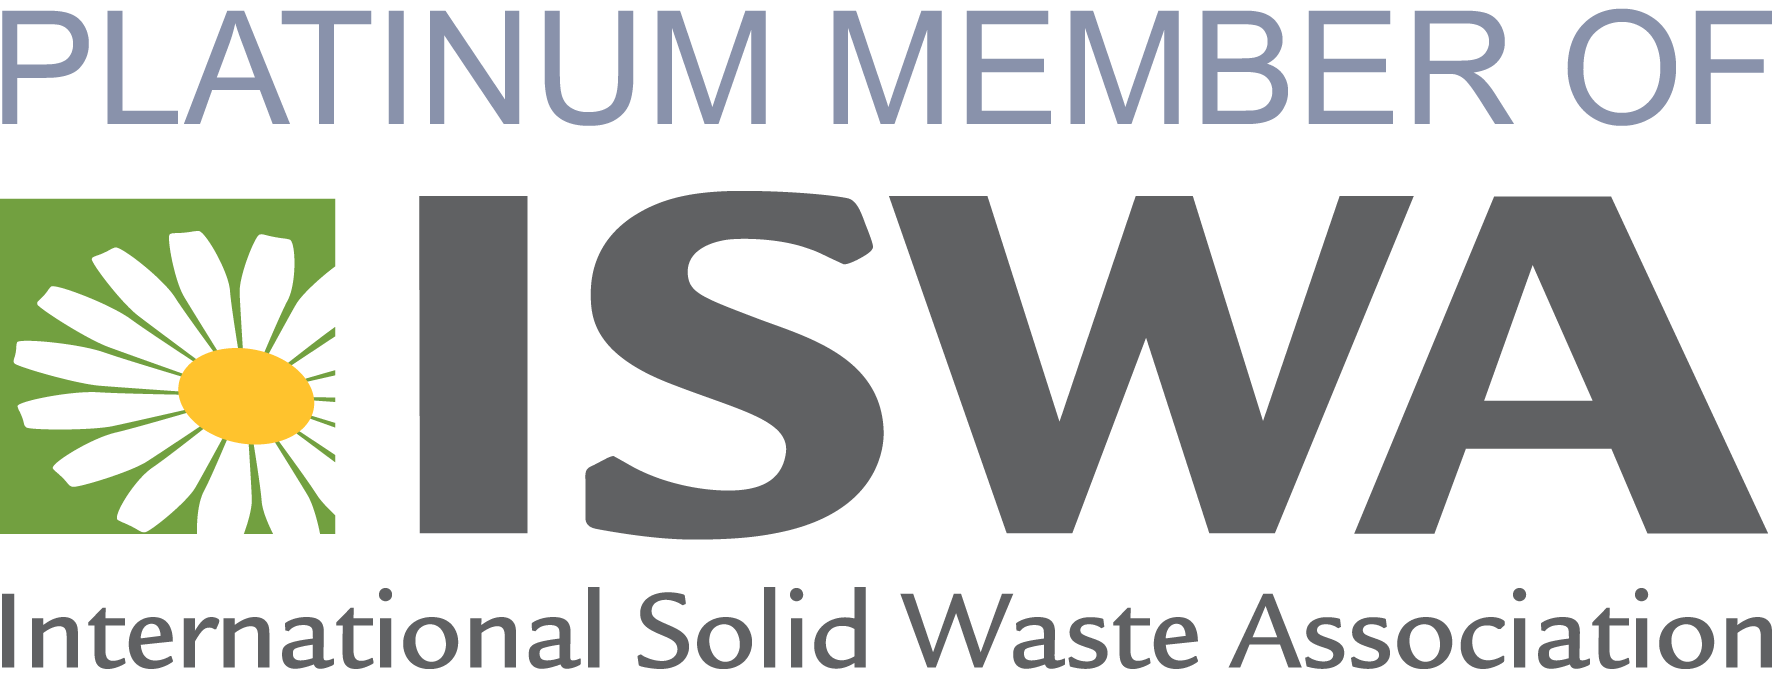 Platinum Member of ISWA